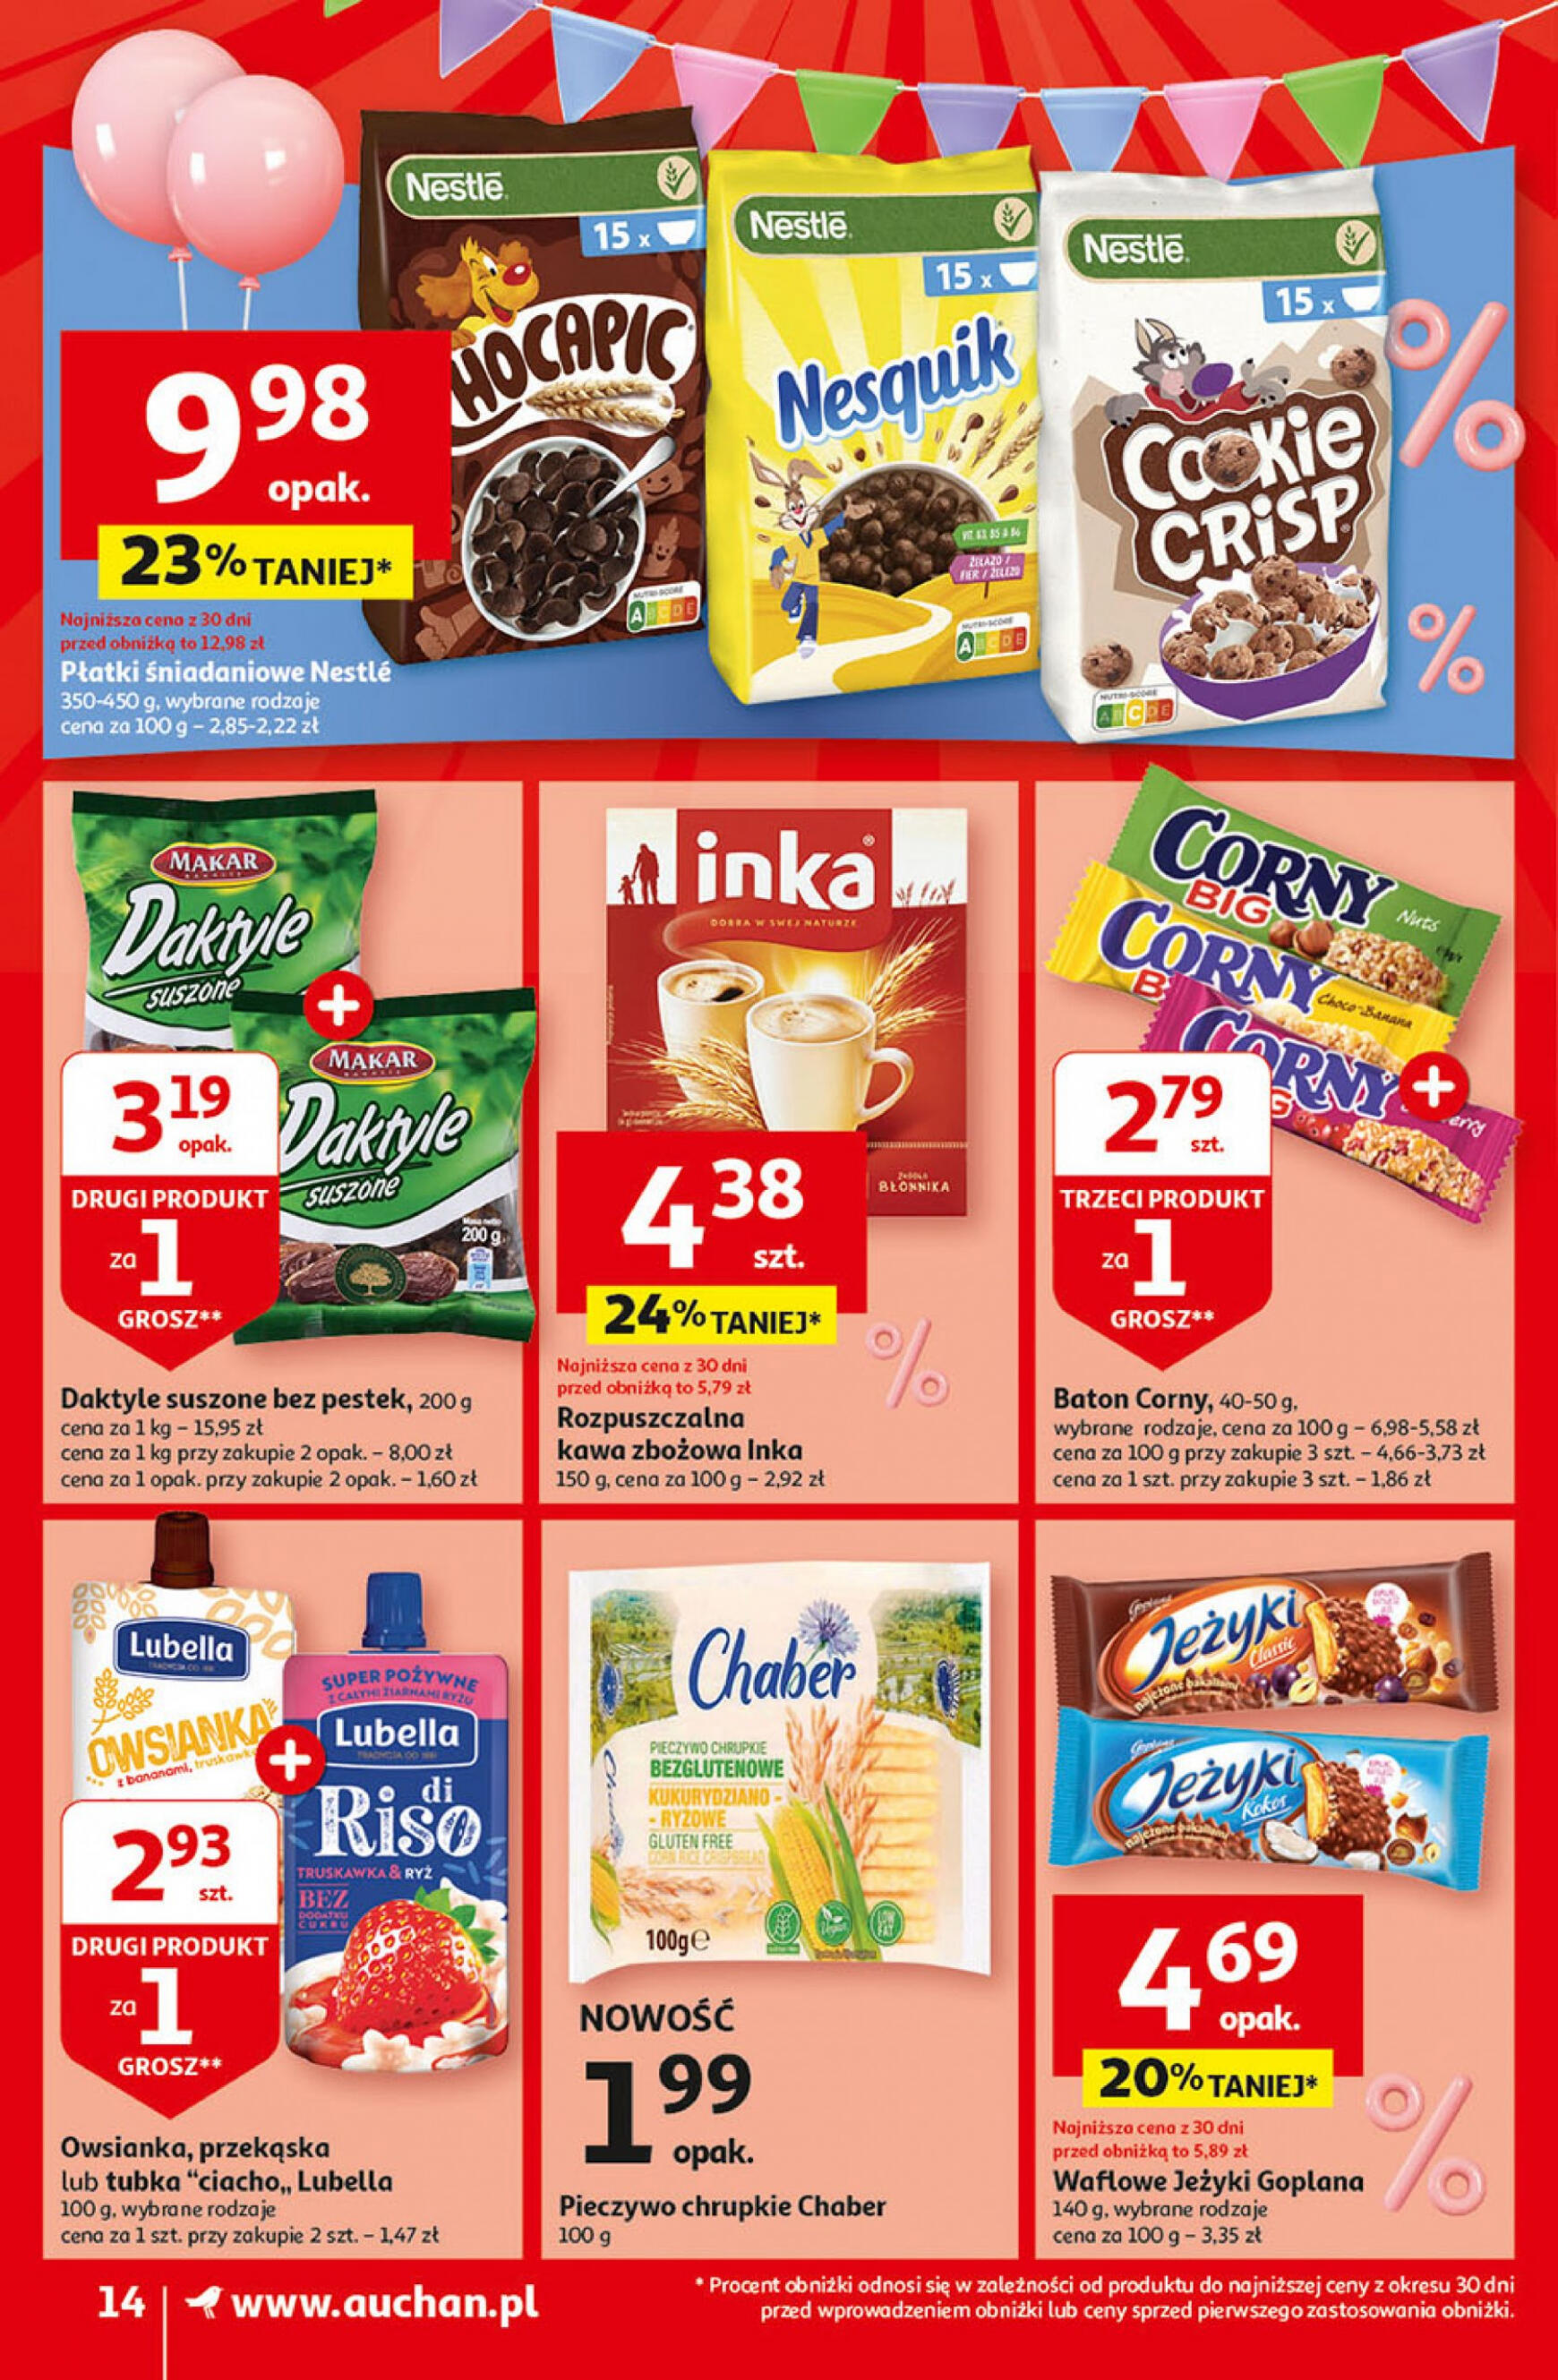 auchan - Supermarket Auchan - Gazetka Jeszcze taniej na urodziny gazetka aktualna ważna od 25.04. - 30.04. - page: 14